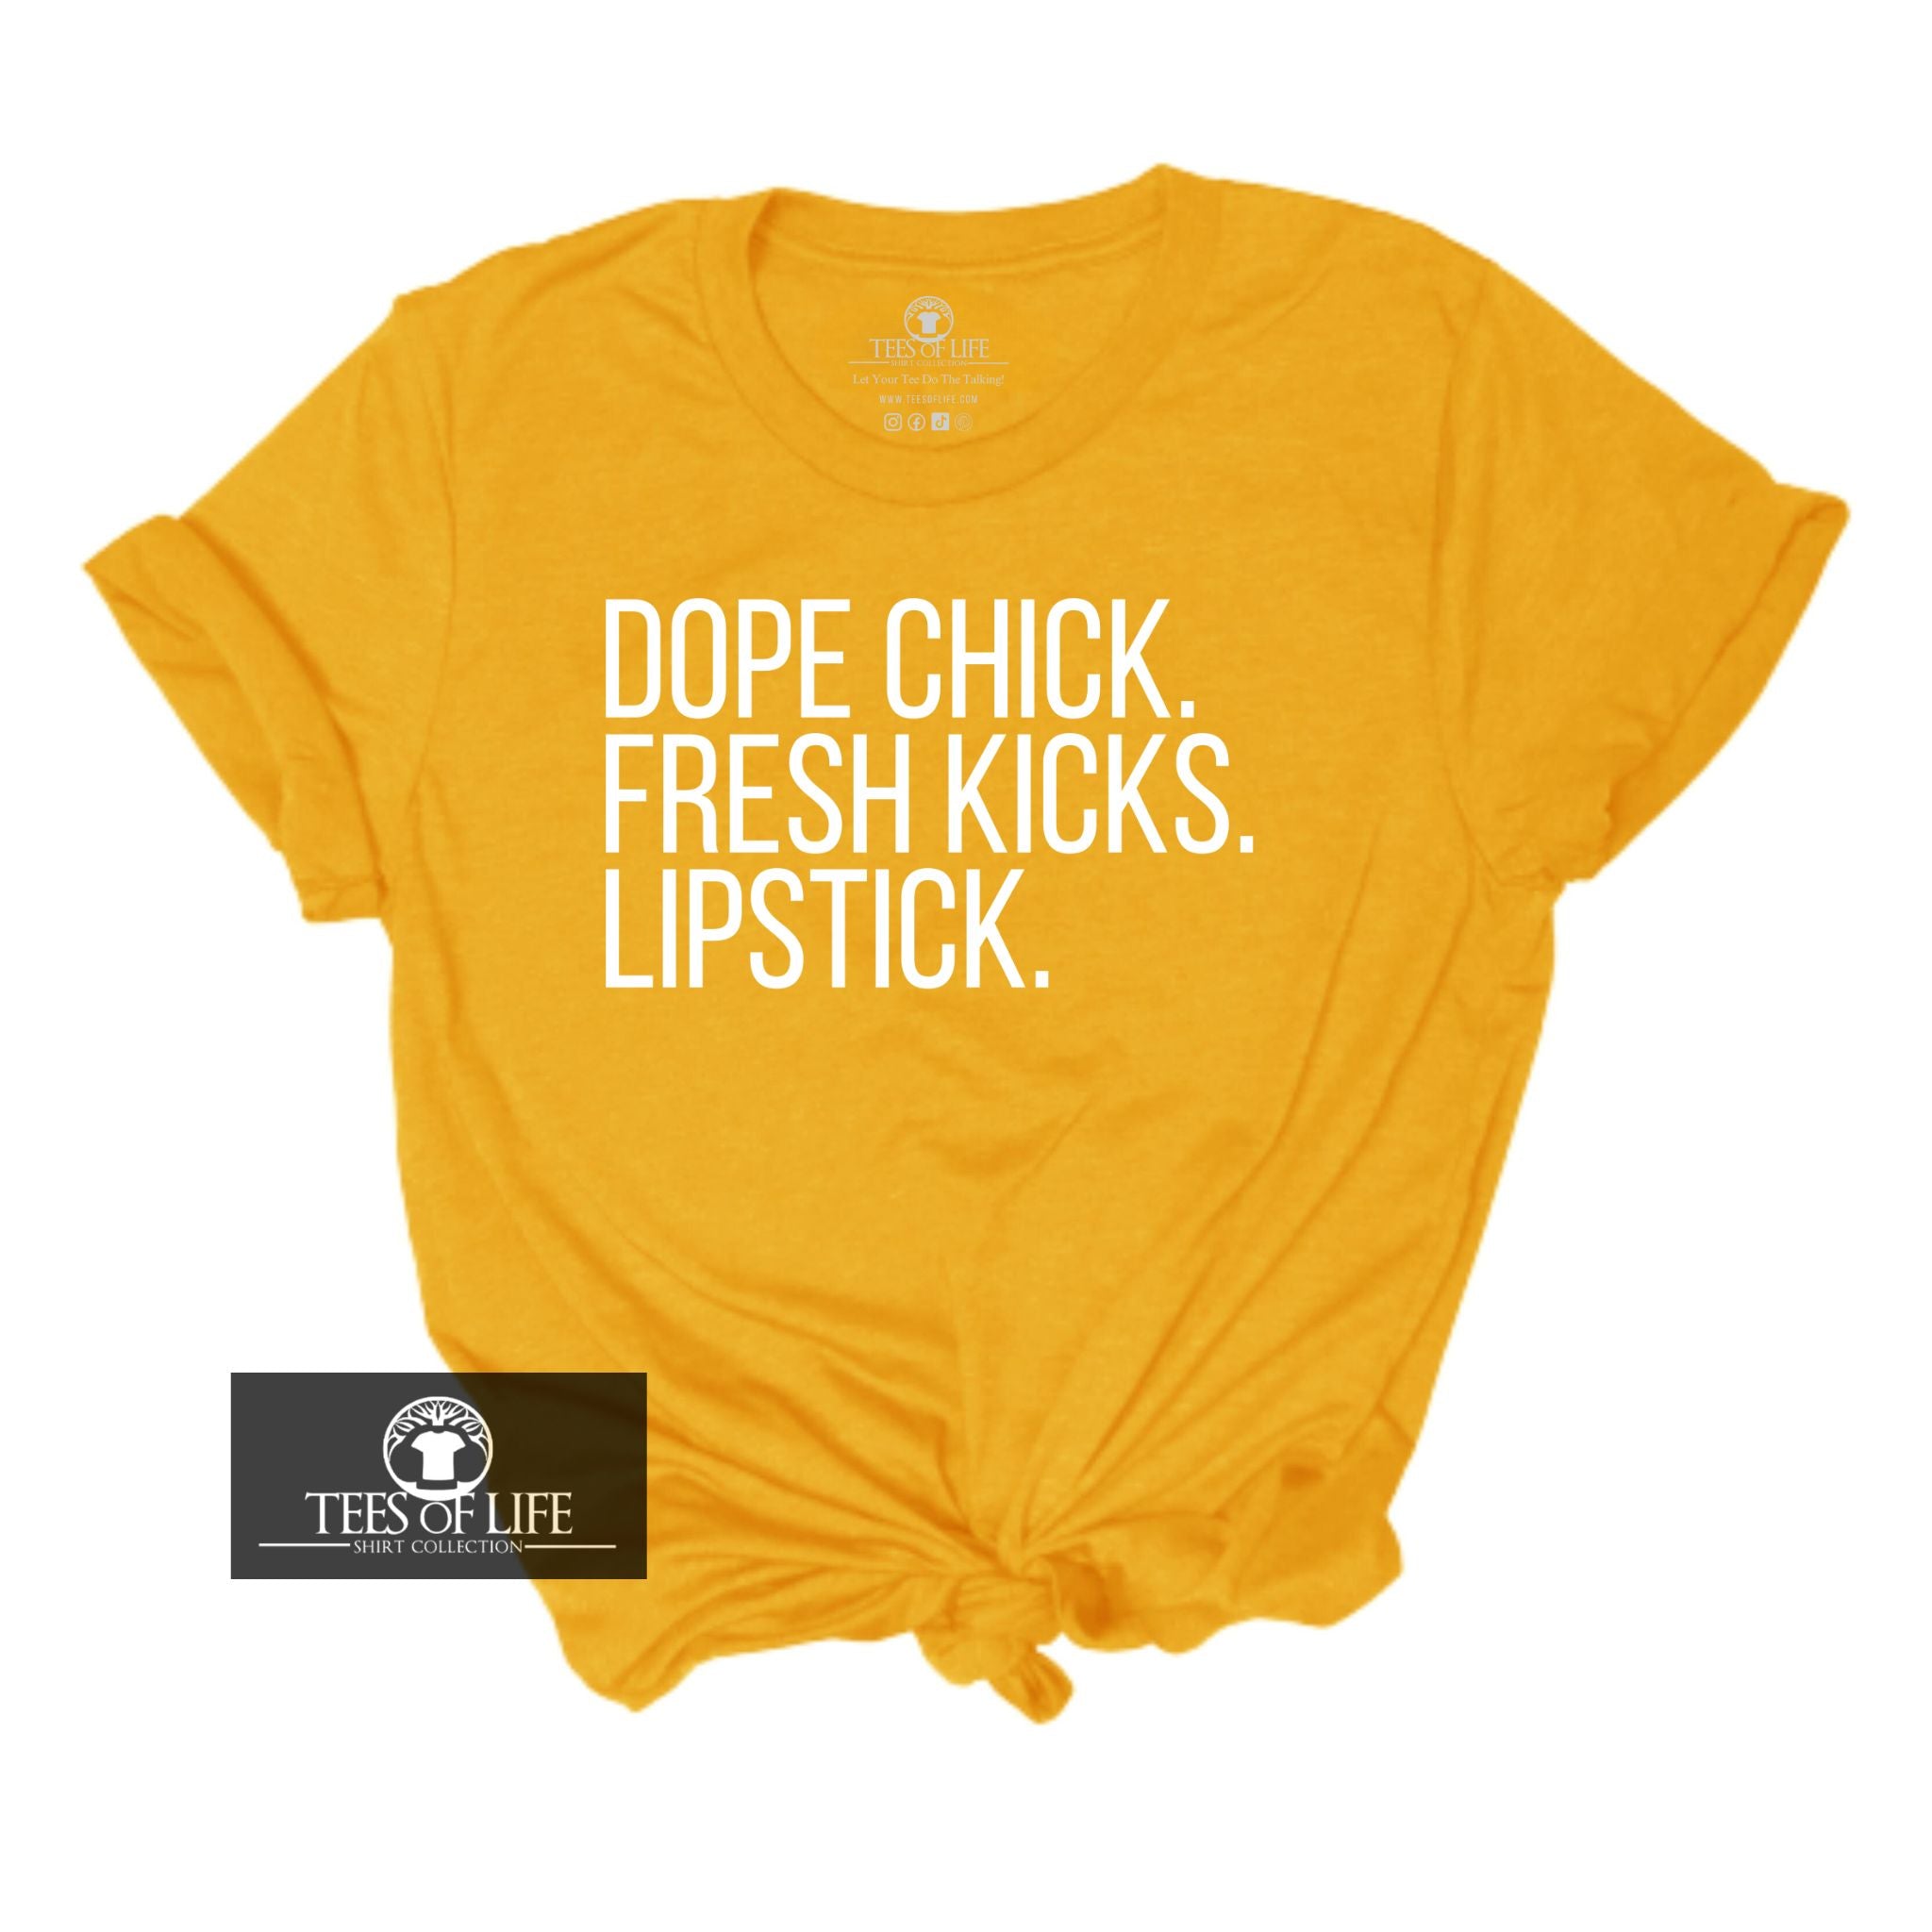 Dope Chick Fresh Kicks Lipstick Unisex Tee